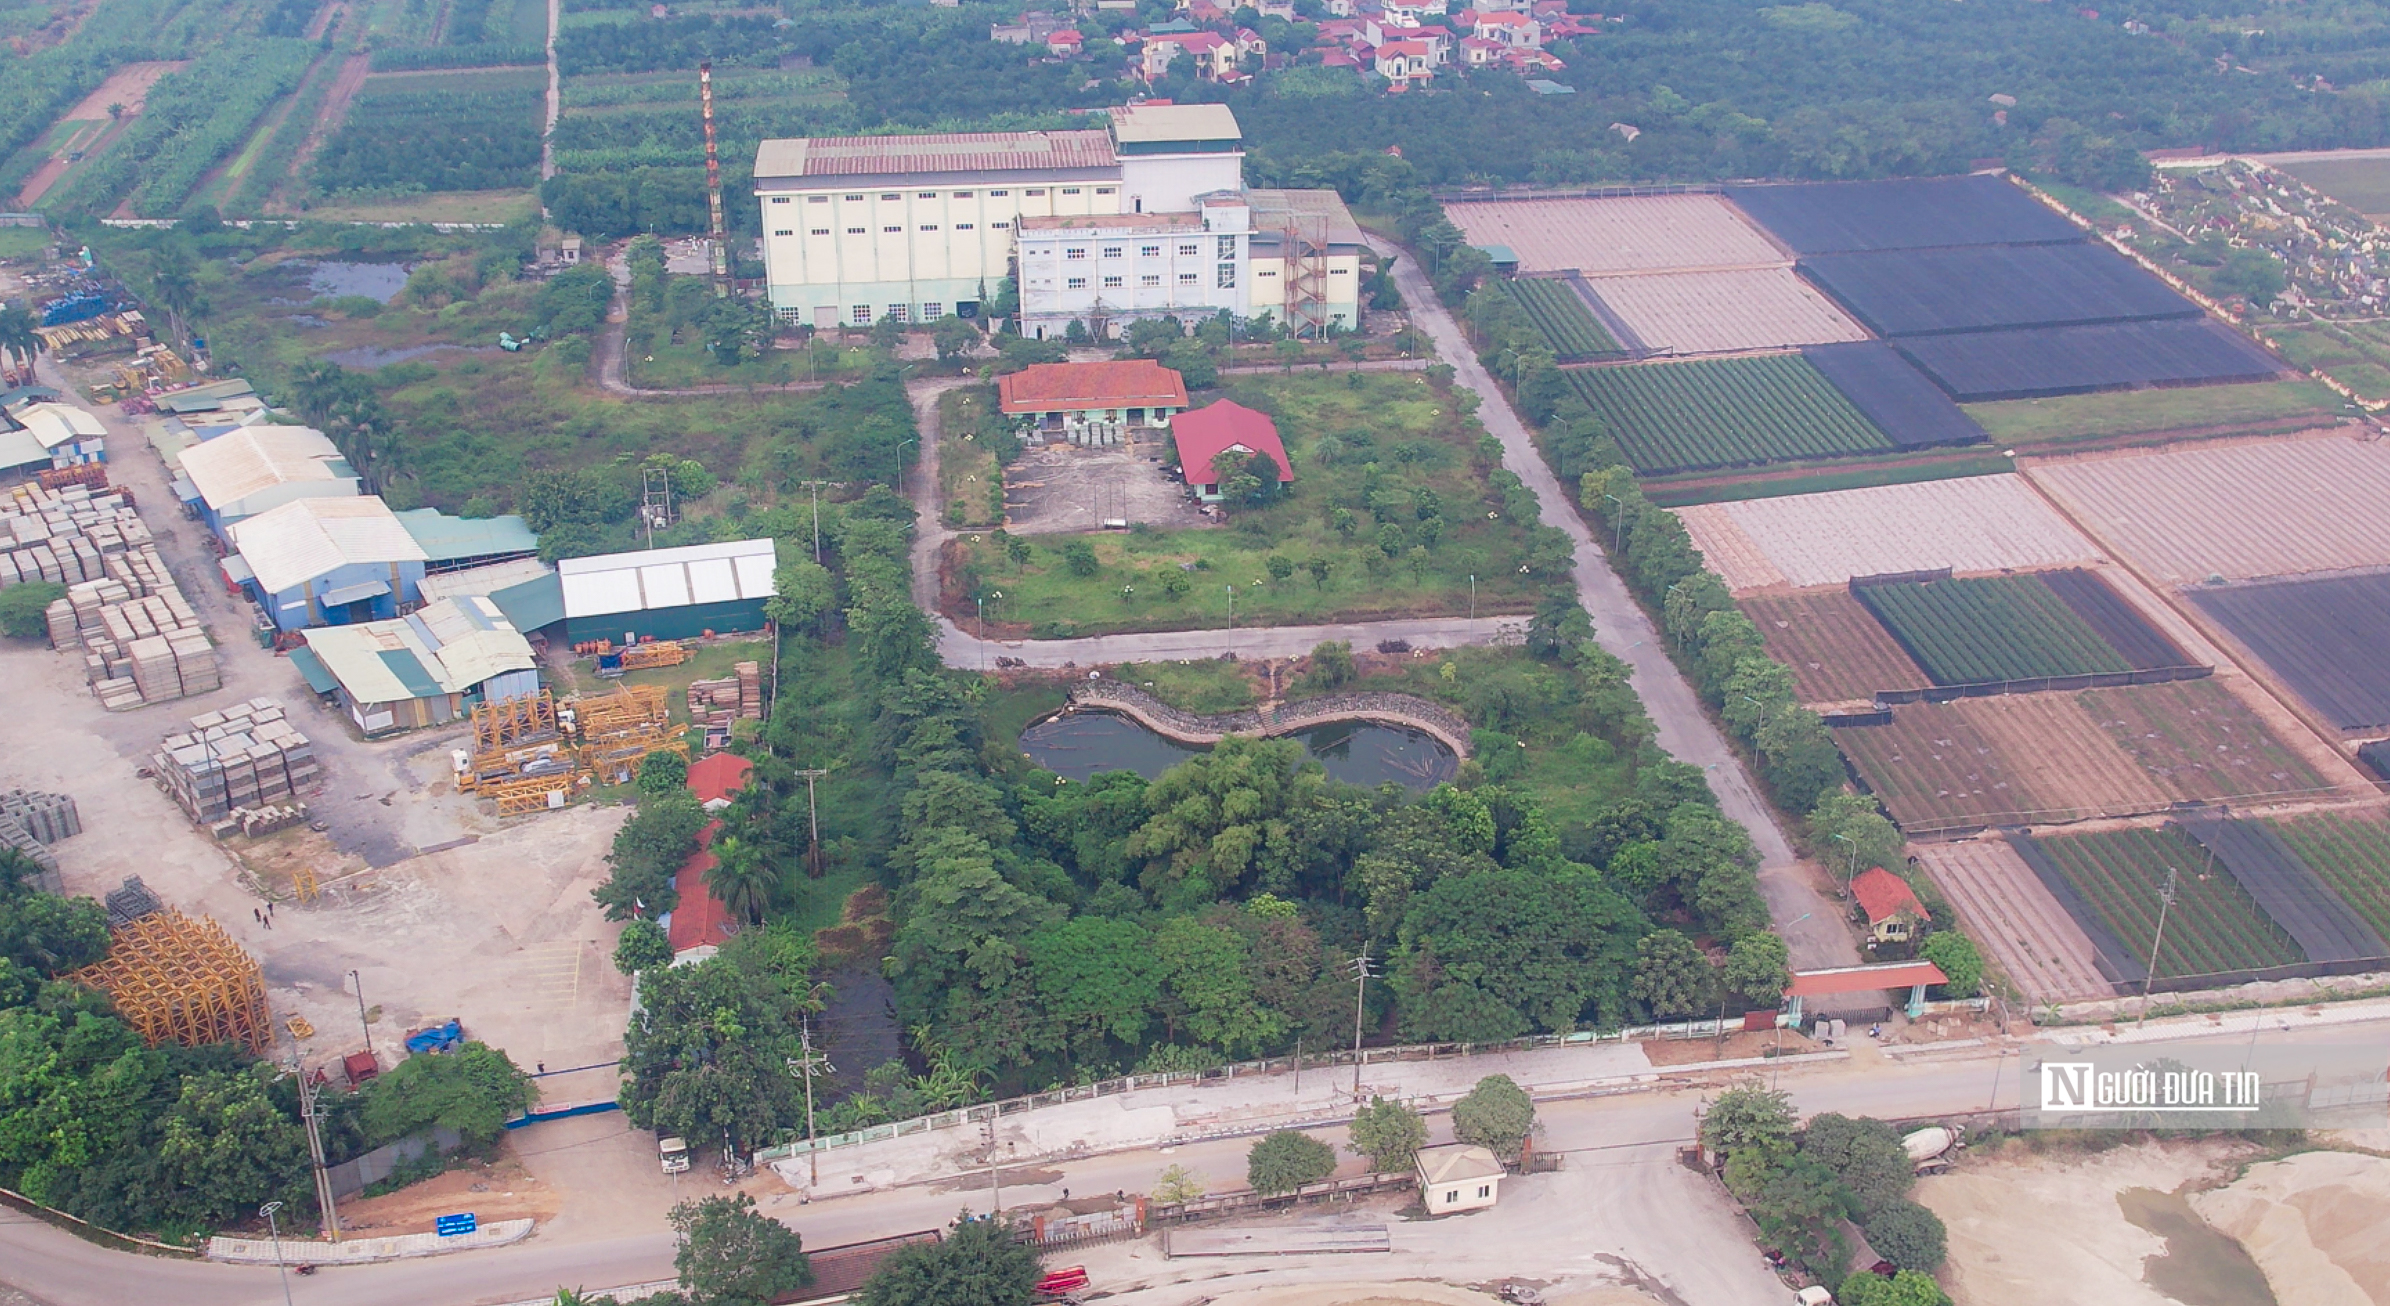 Dân sinh - Hà Nội: Cận cảnh nhà máy xử lý rác trăm tỷ bị bỏ hoang 